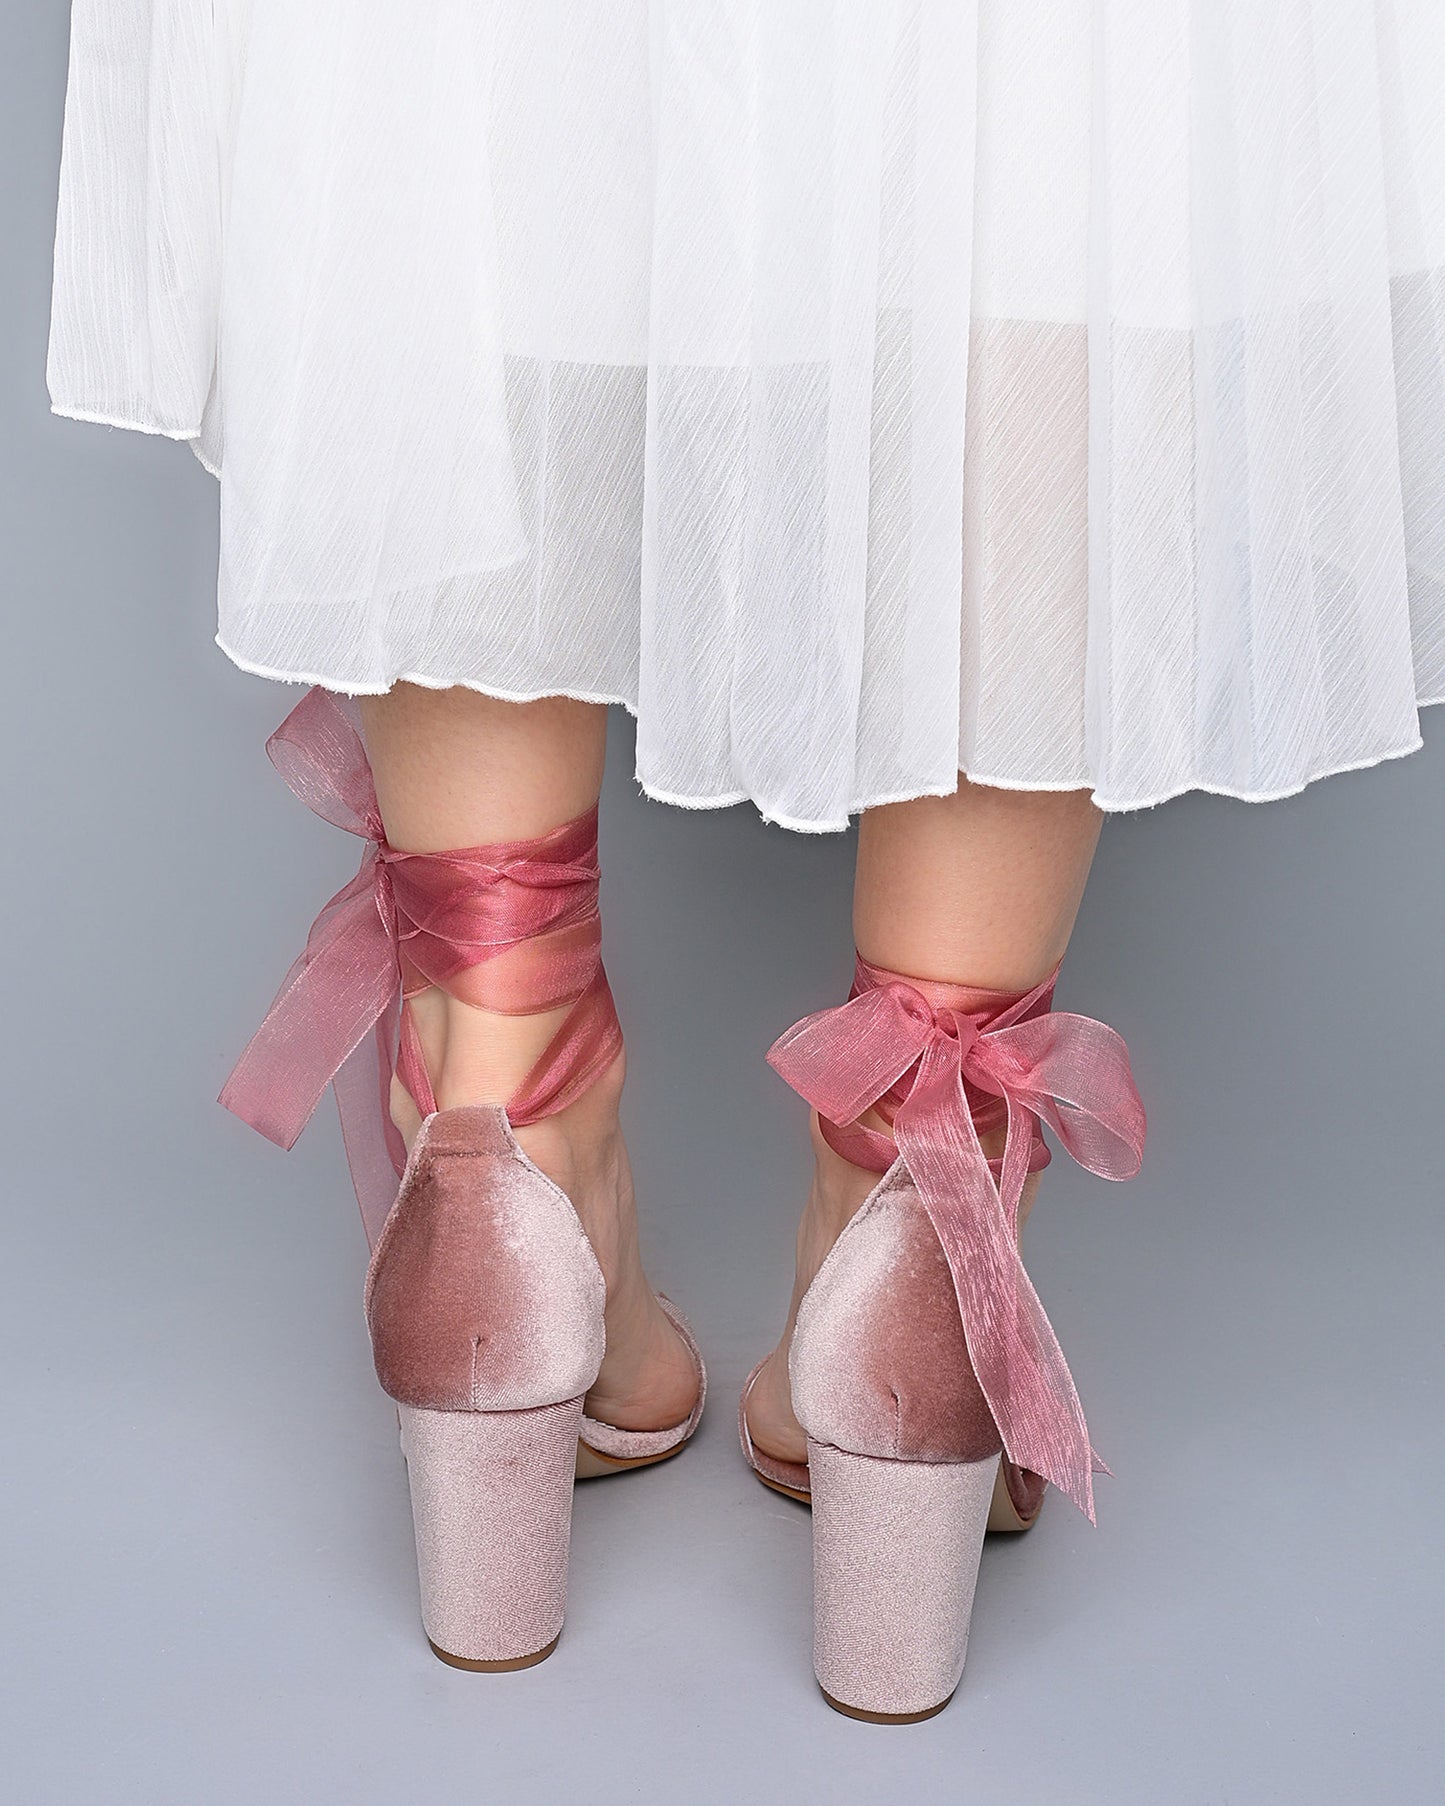 wedding shoes block heel